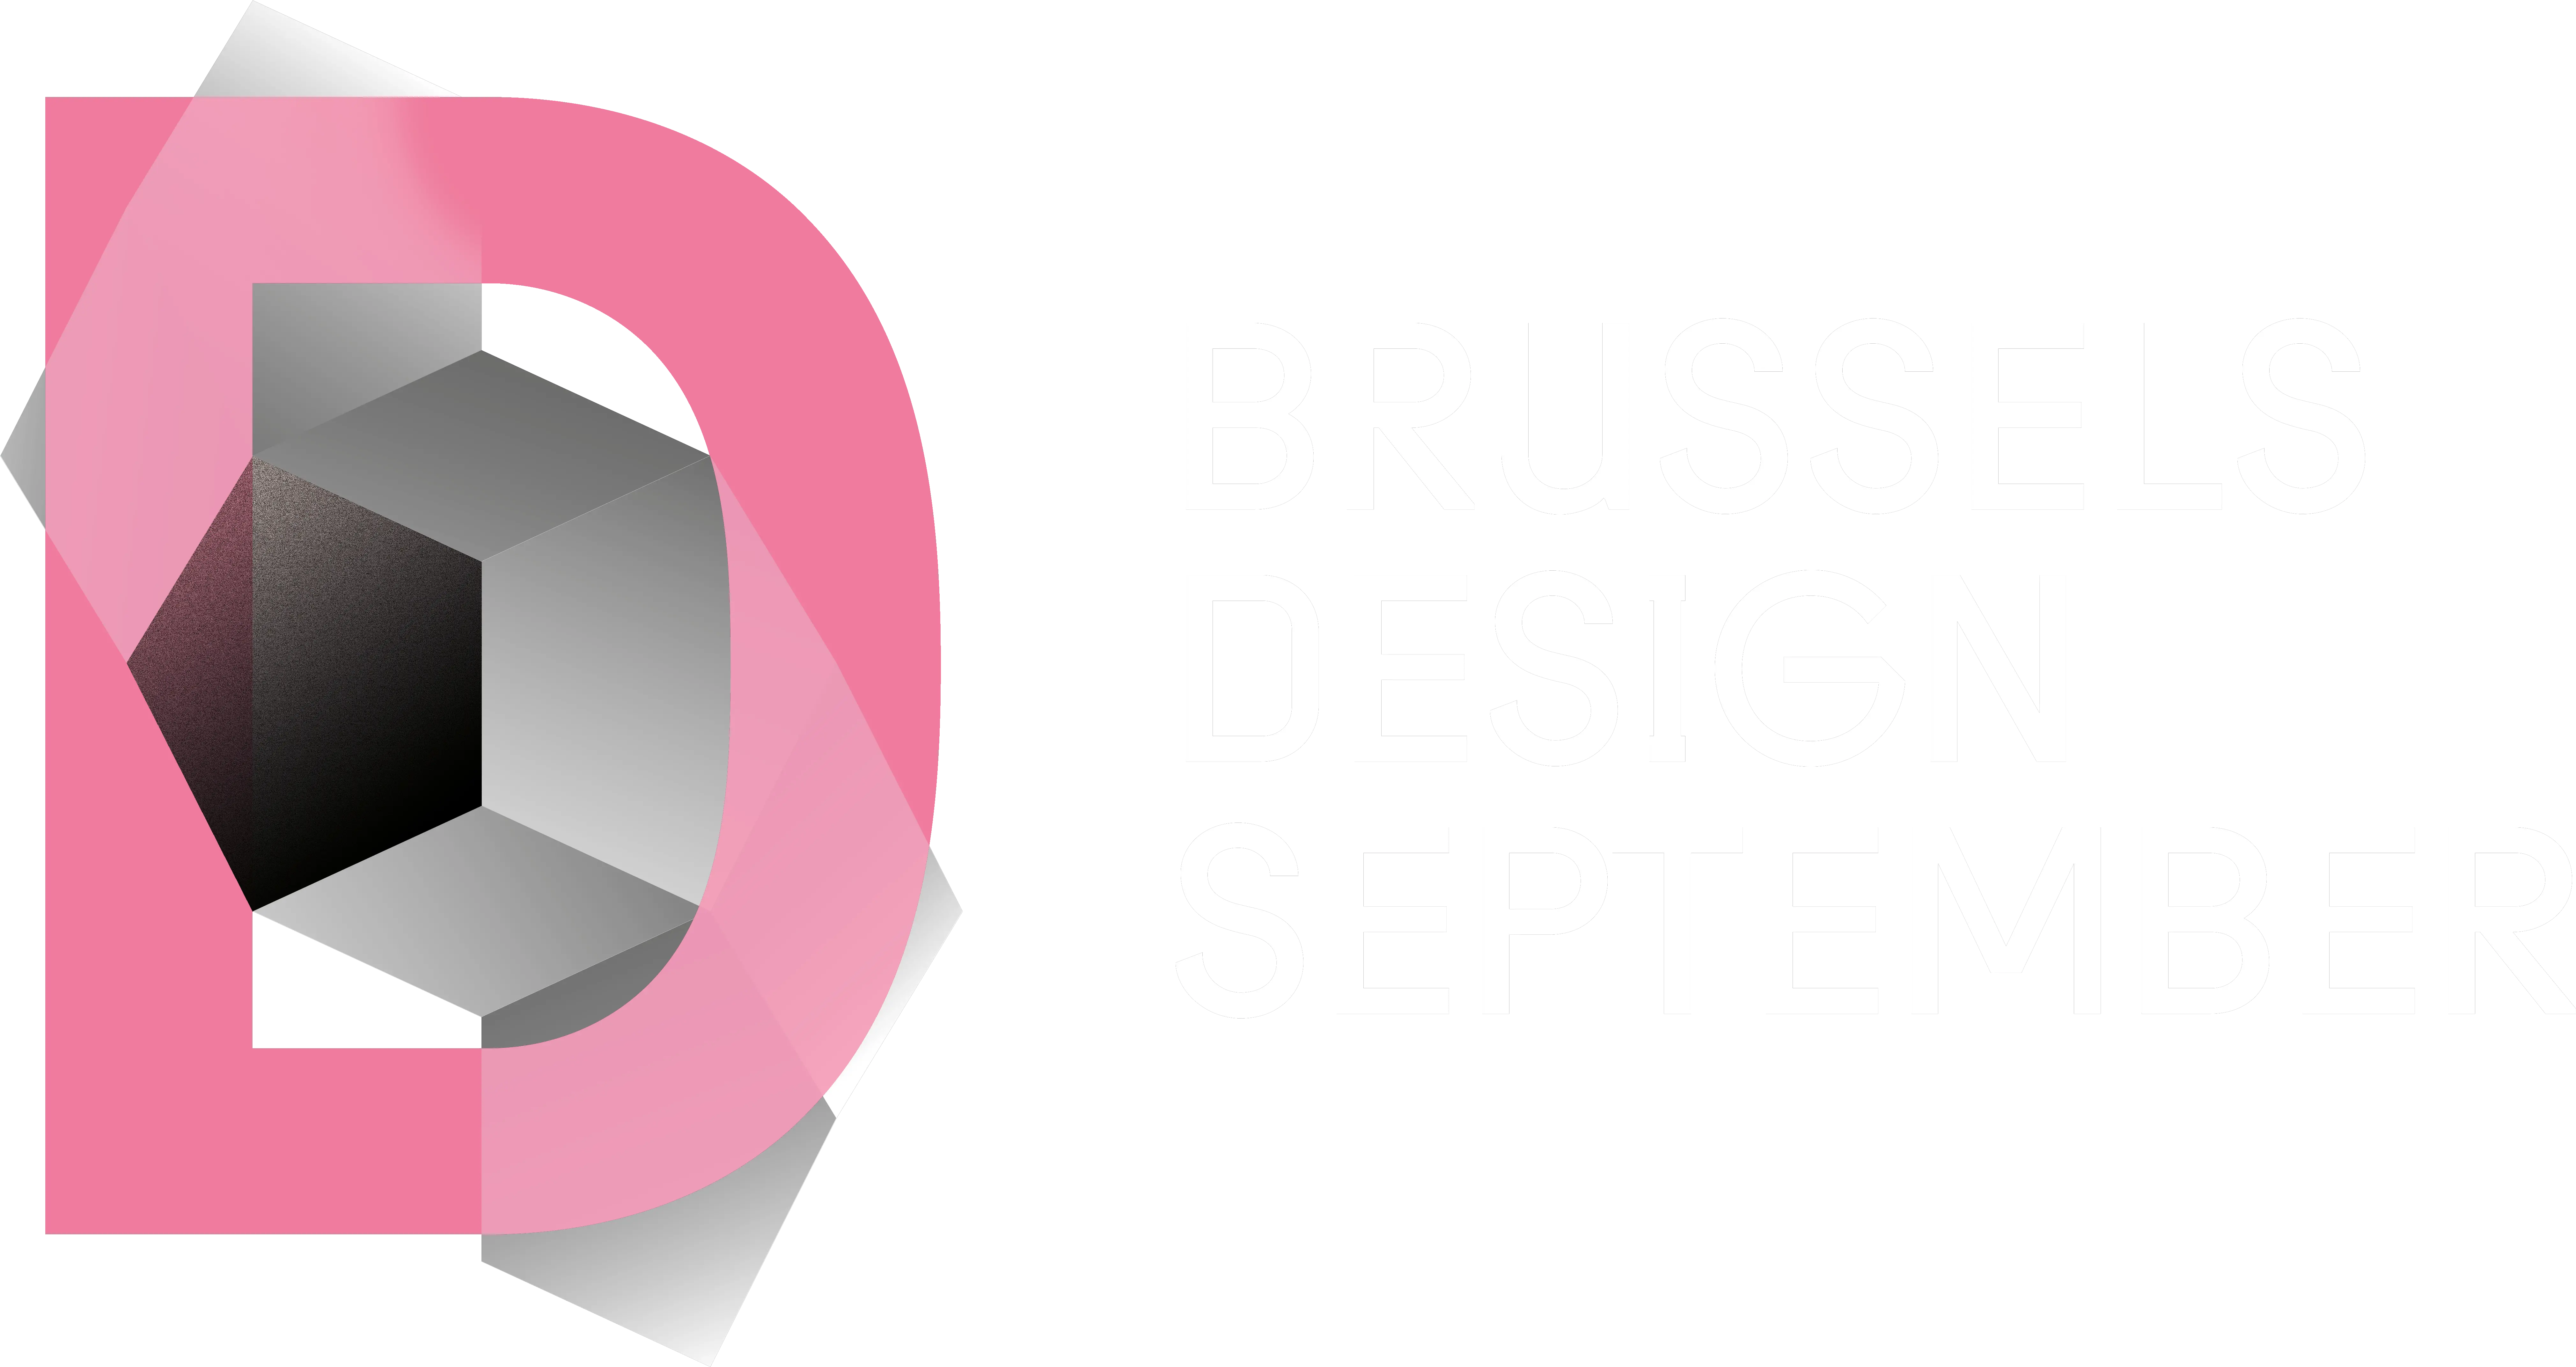 Design September Brussels Design September Png September Png